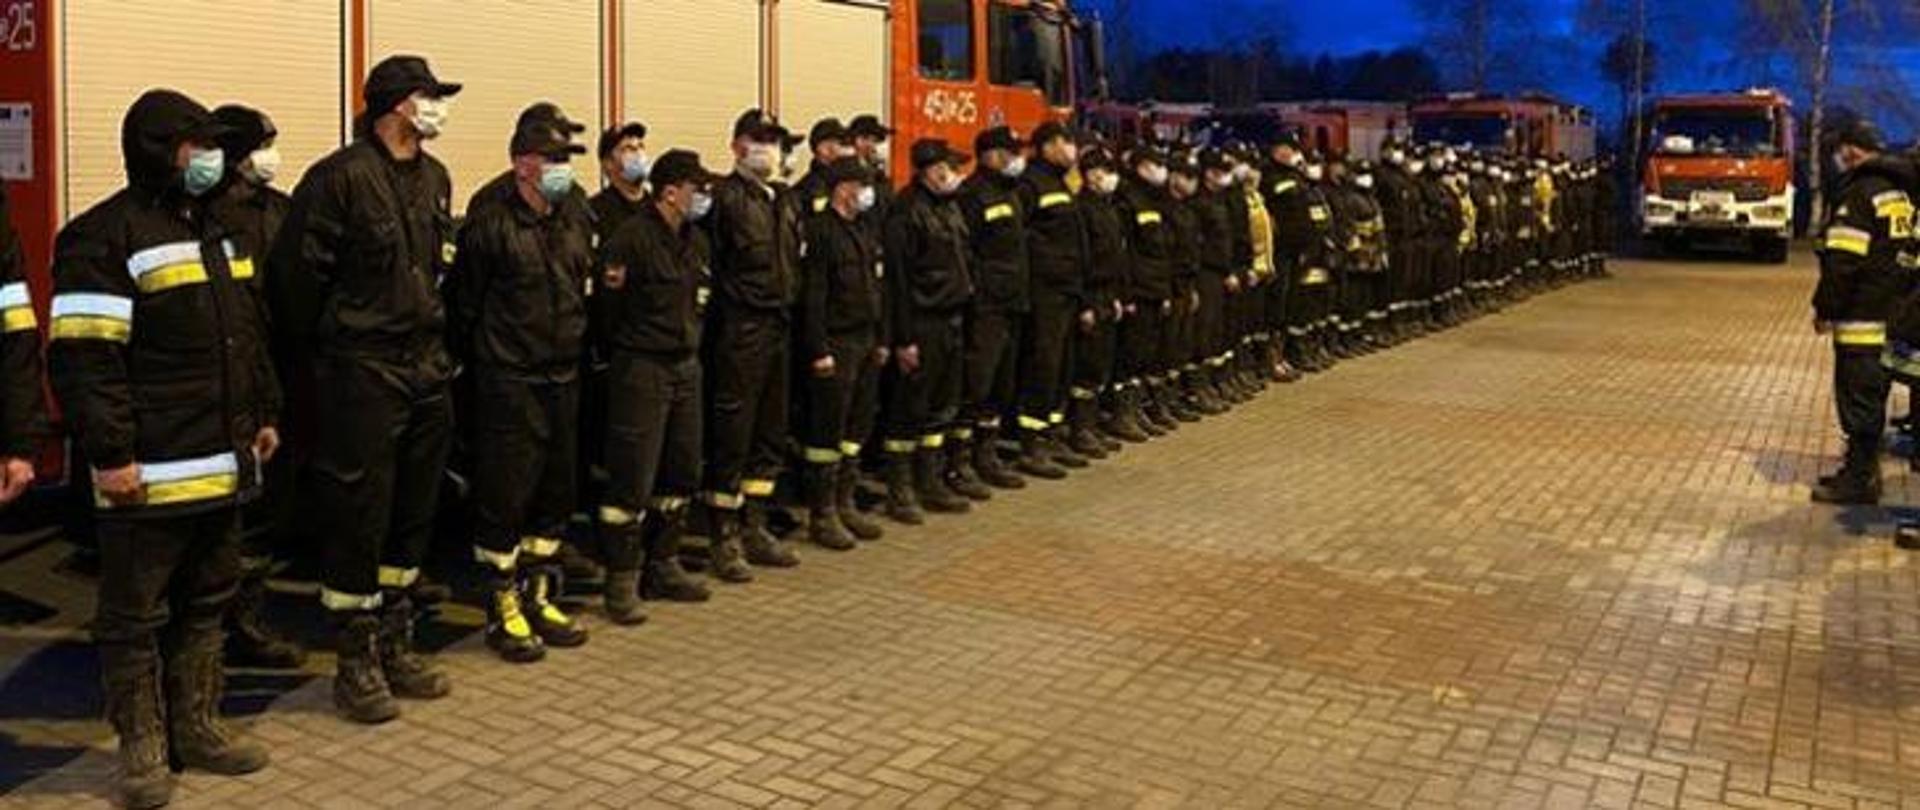 Kilkudziesięciu strażaków ustawionych w dwóch rzędach podczas odprawy przed ćwiczeniami.